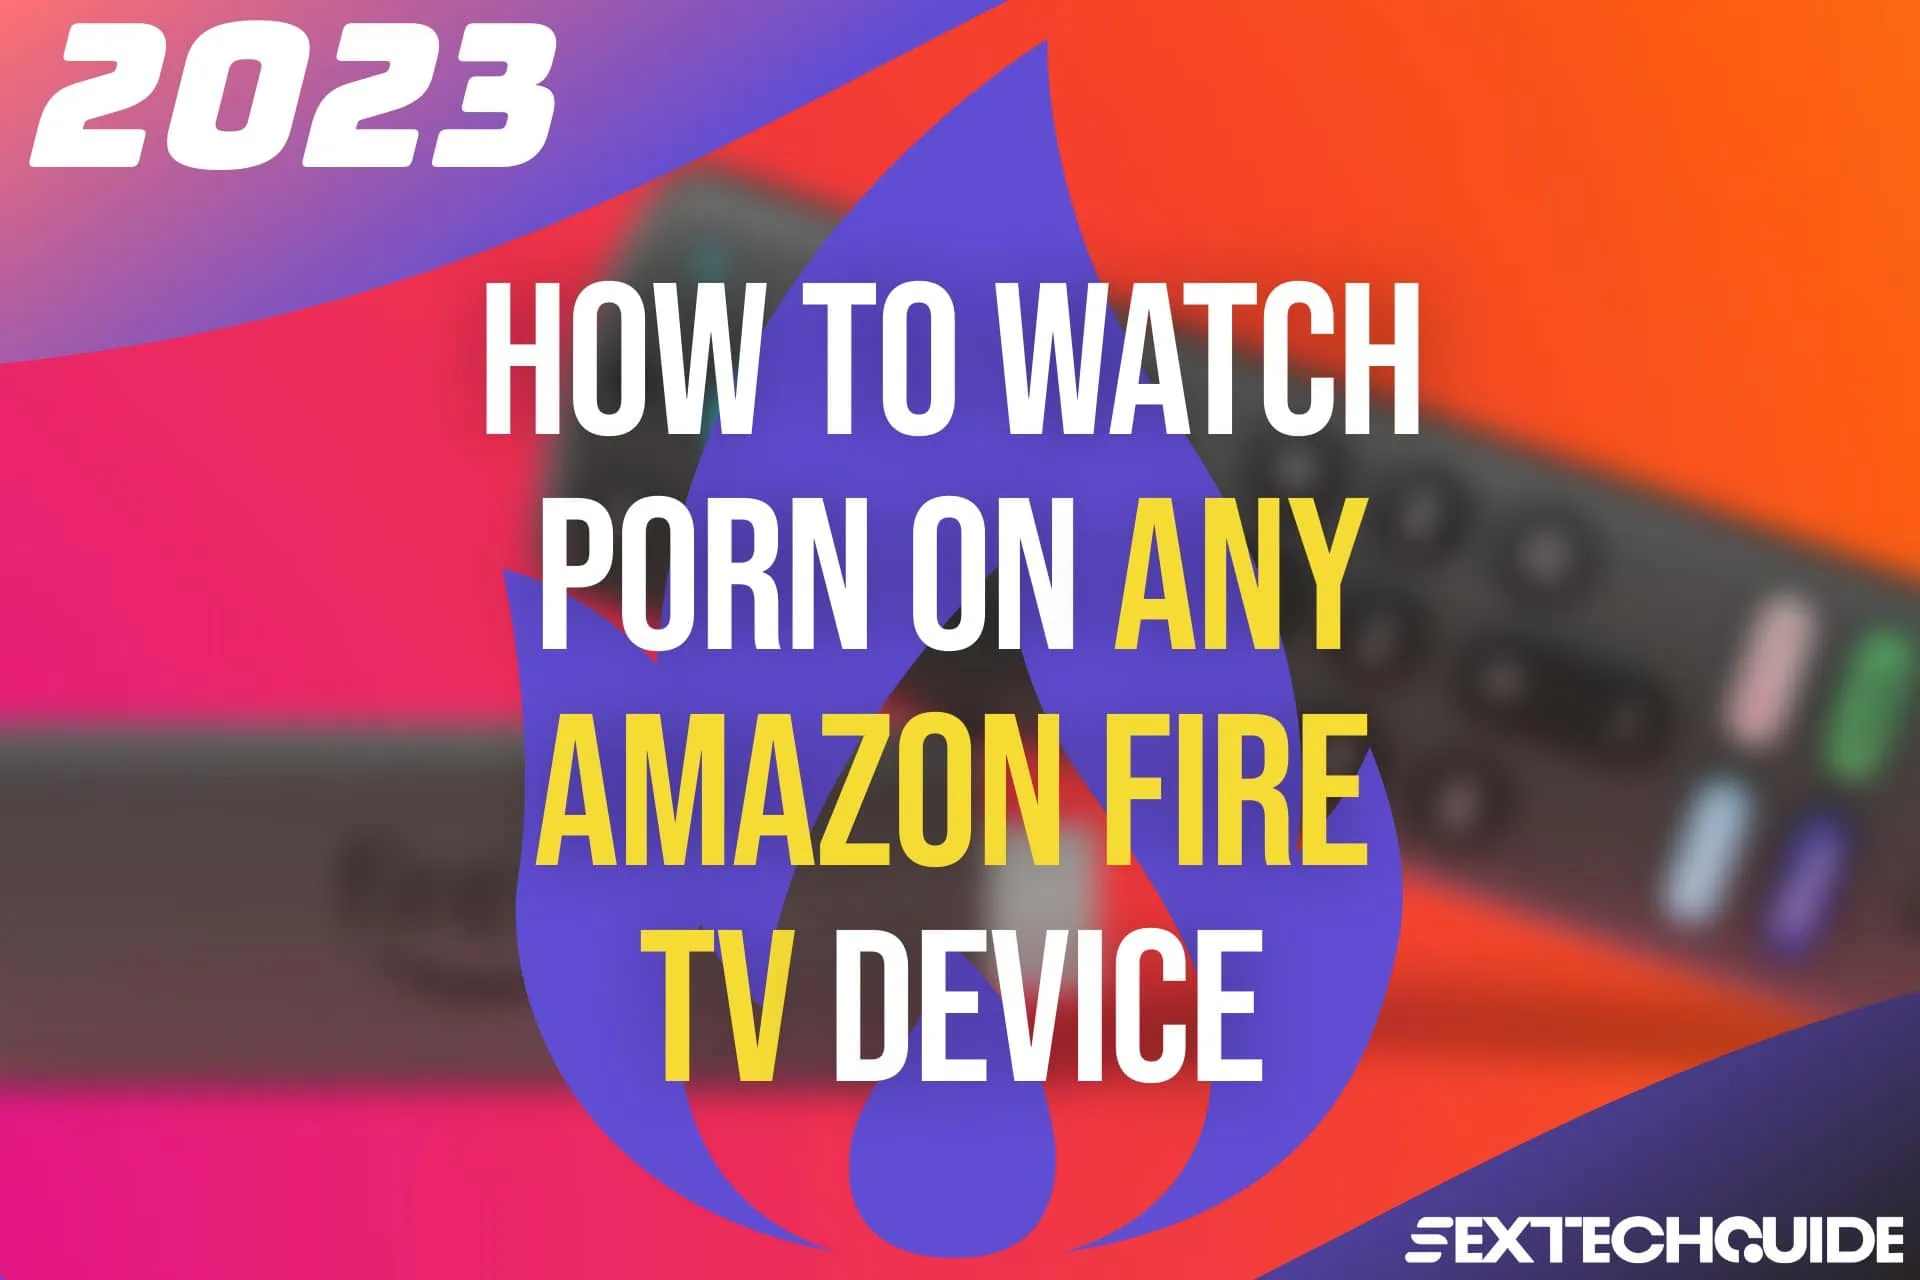 Sex Videos Hdmi - Fire Porn (2023): Find & Watch XXX Videos on Amazon Devices